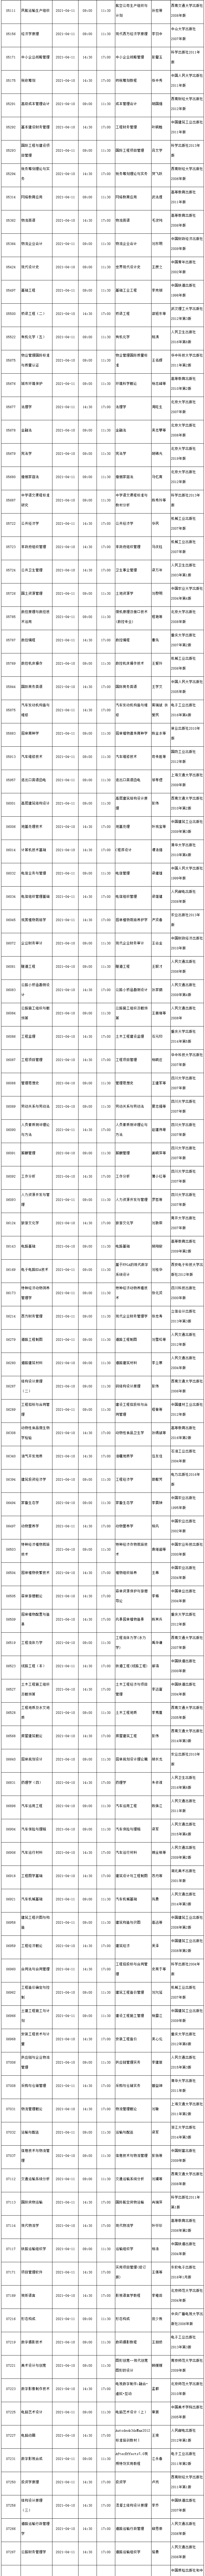 四川省高等教育自学考试2021年4月考试教材表